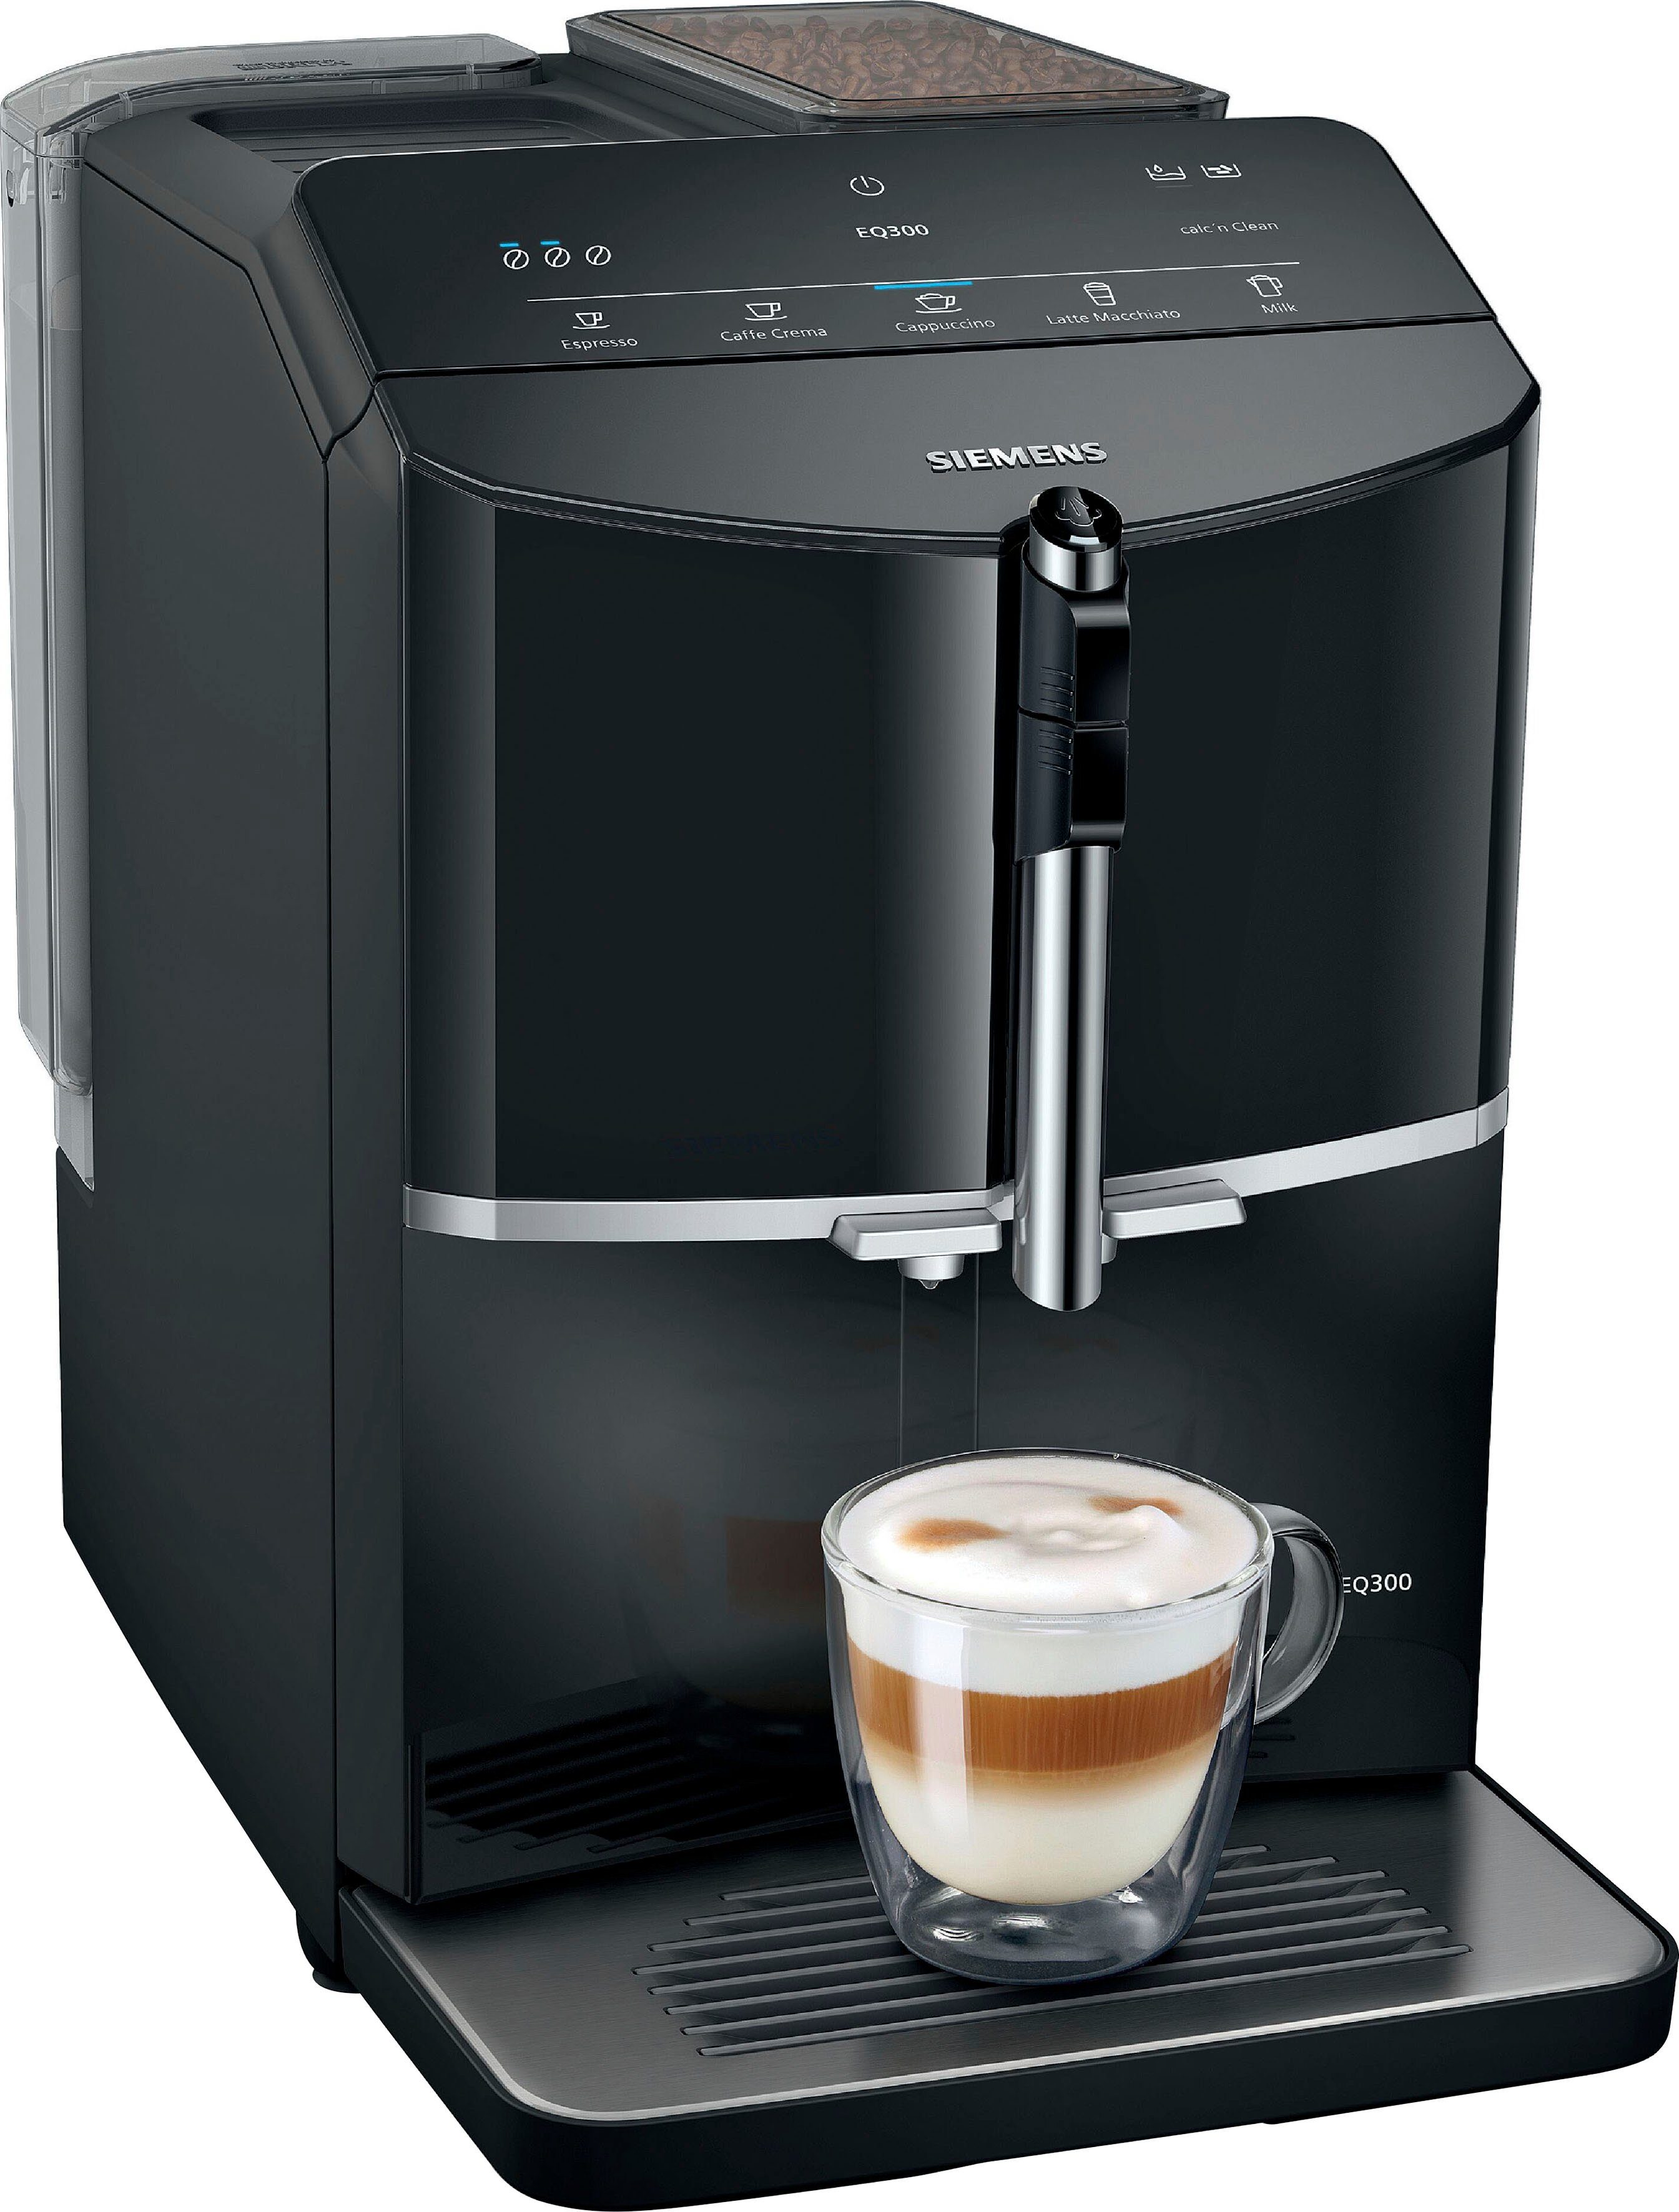 SIEMENS Kaffeevollautomat EQ300 TF301E19, viele Kaffeespezialitäten, OneTouch-Funktion, Milchaufschäumer, Keramikmahlwerk, klavierlack schwarz